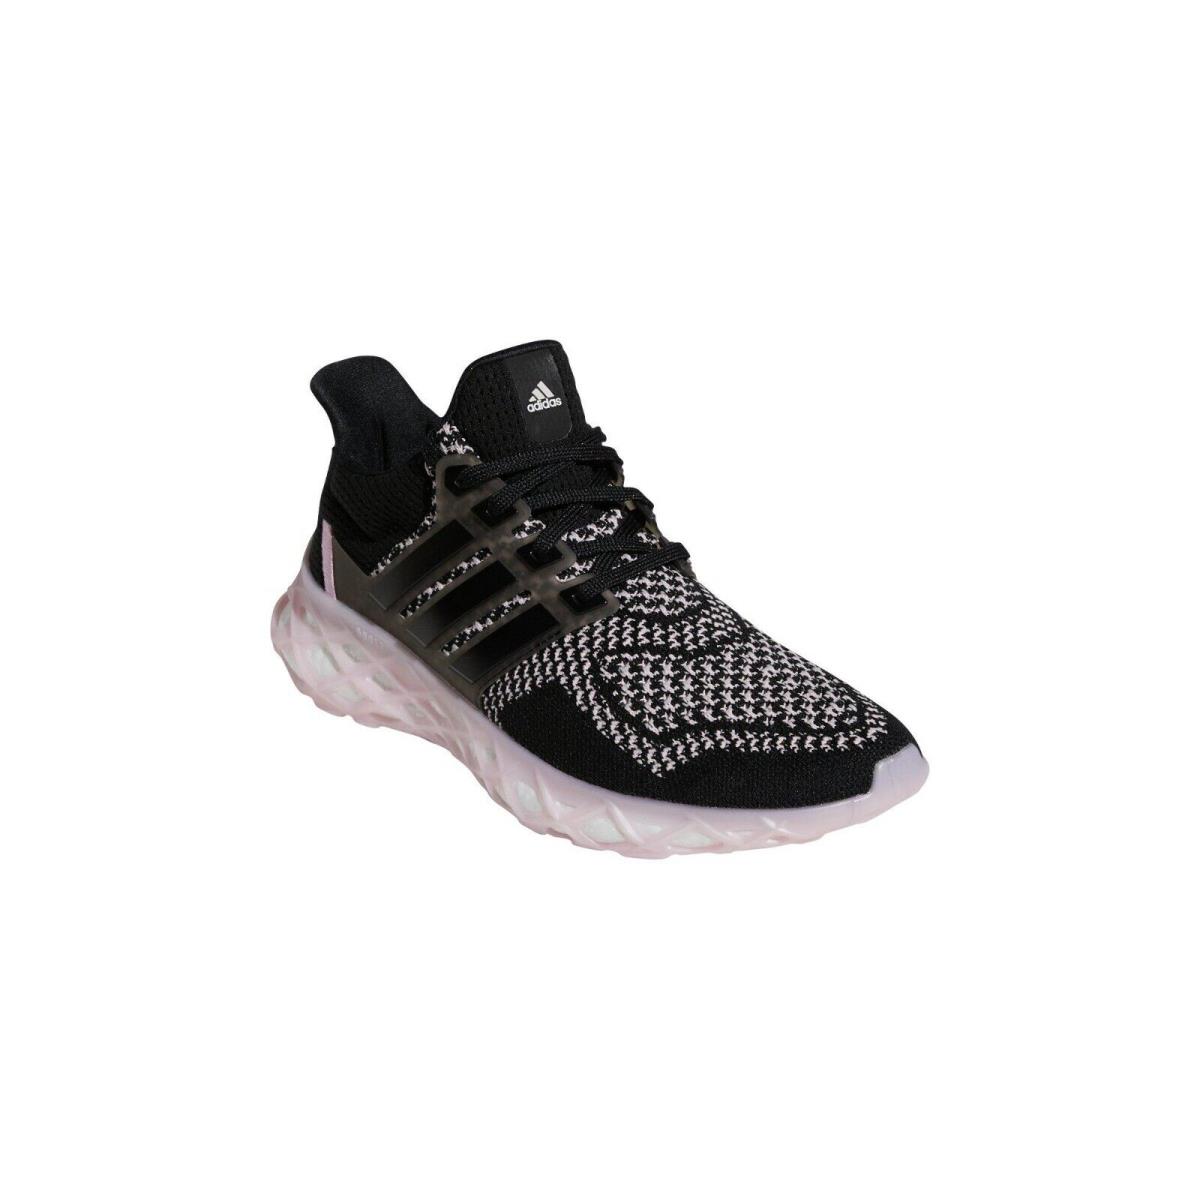 Adidas Ultraboost Dna Web J. . Big Kids Size: 5.5 - 6.5 - Black/Clear Pink